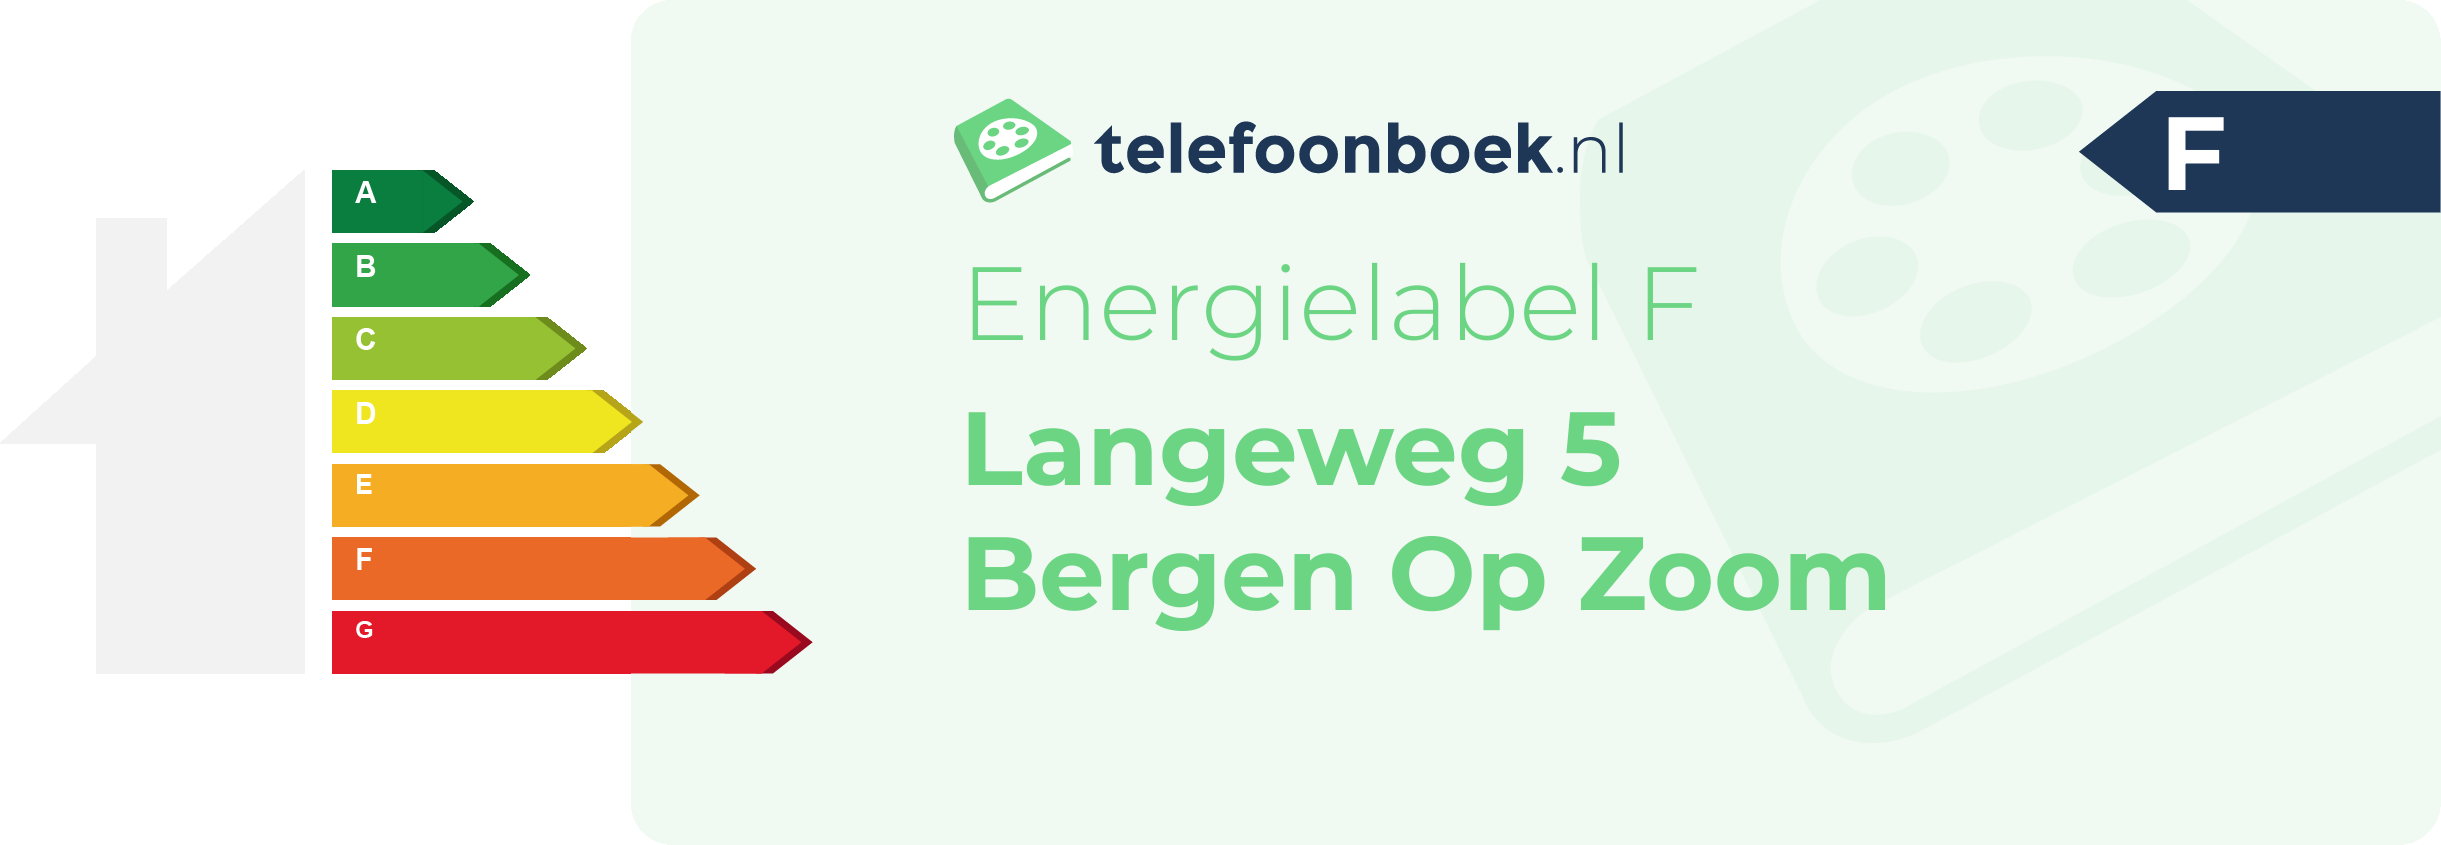 Energielabel Langeweg 5 Bergen Op Zoom